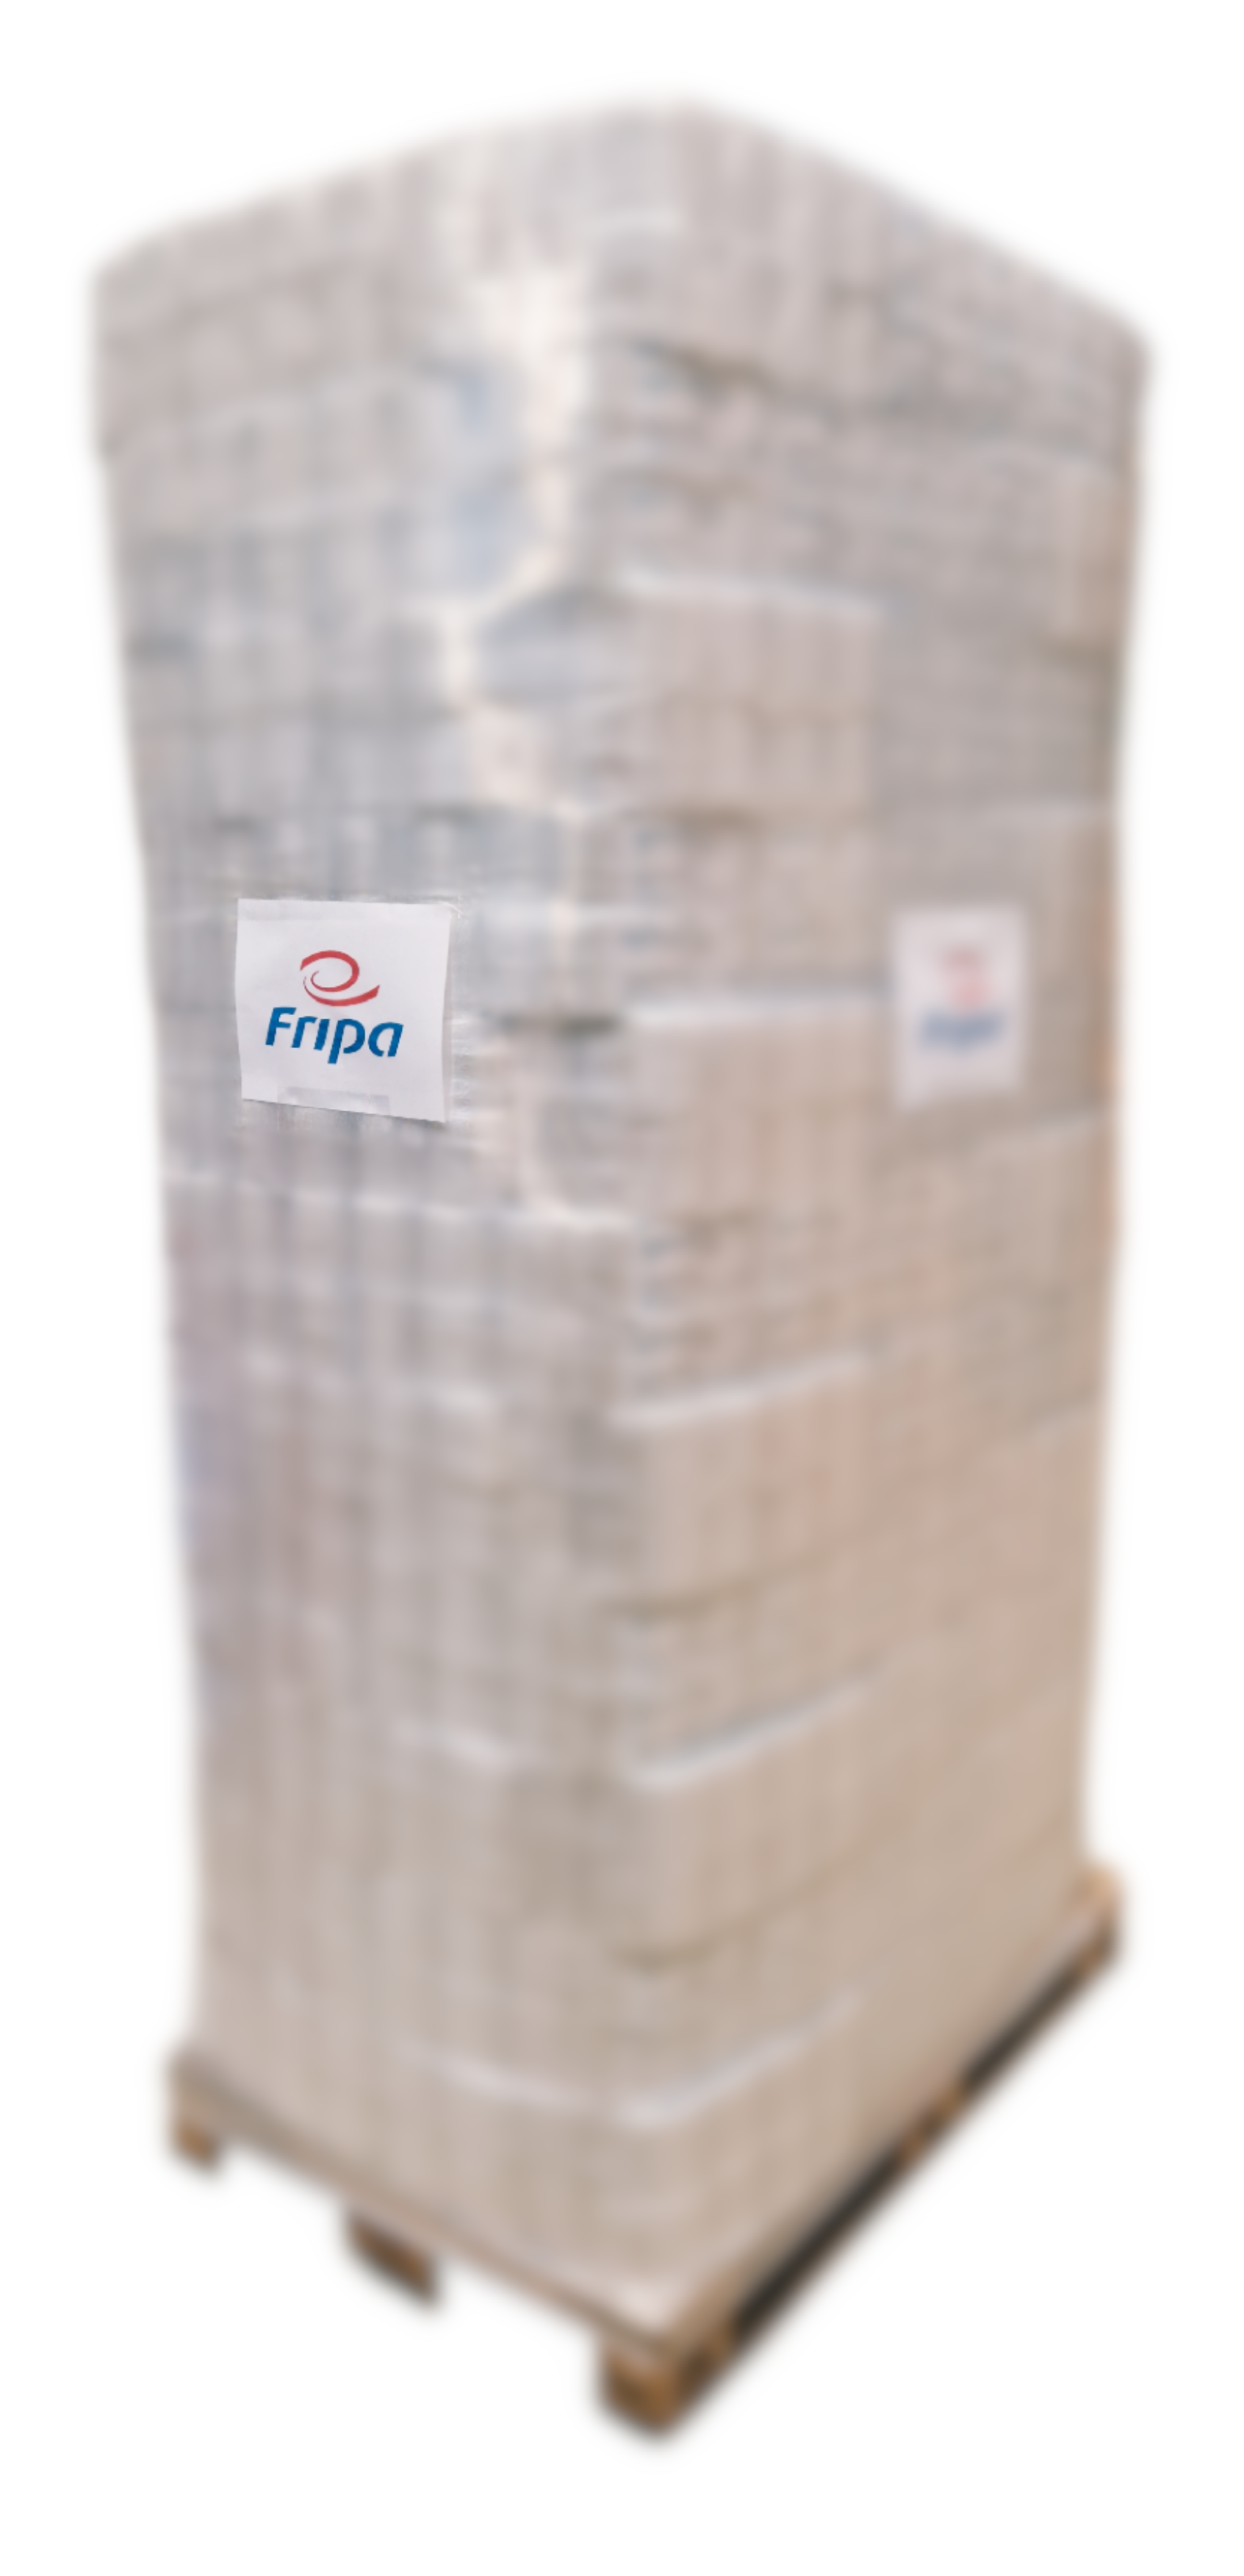 Fripa-WC-Papier Tissue Edina 2lg weiß 1010808 - 1728 Rollen pro Palette